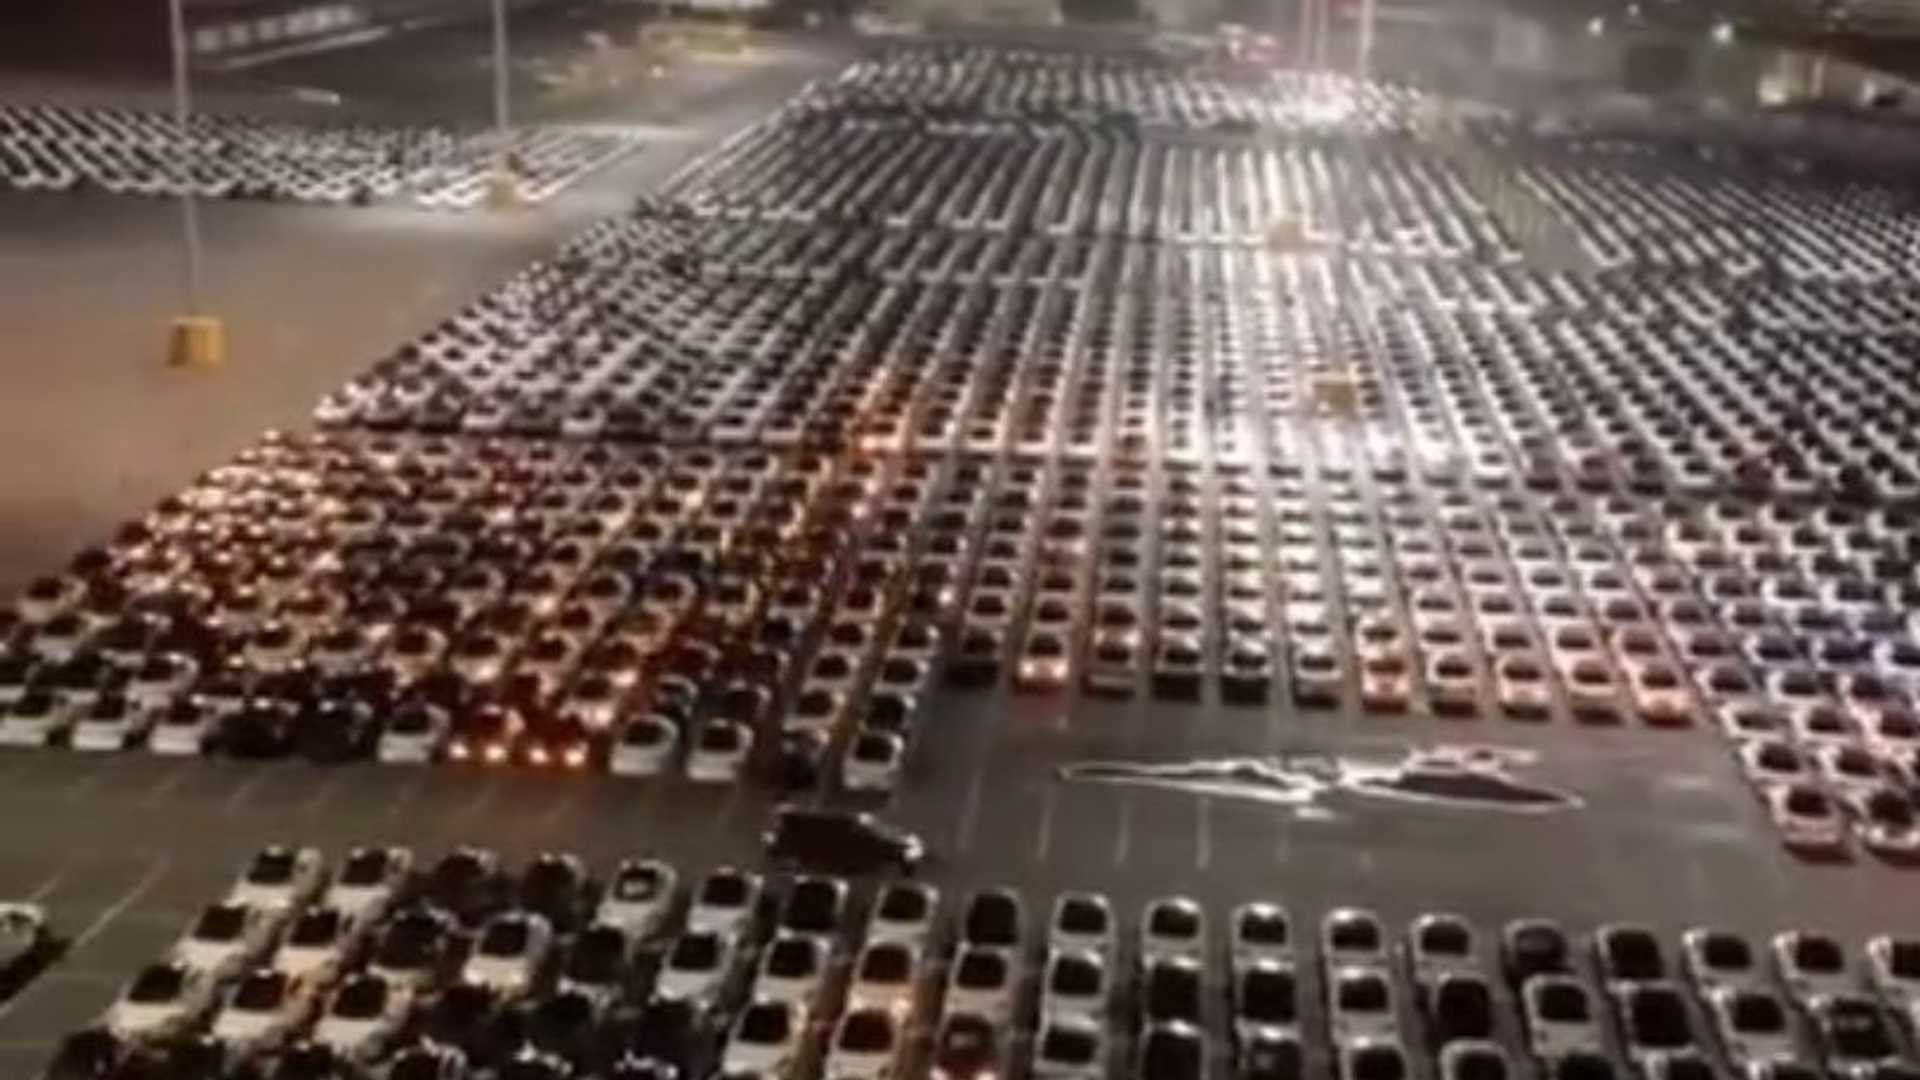  VIDEO Momentul în care sute de mașini Tesla primesc un update. Imaginile inedite fac înconjurul internetului